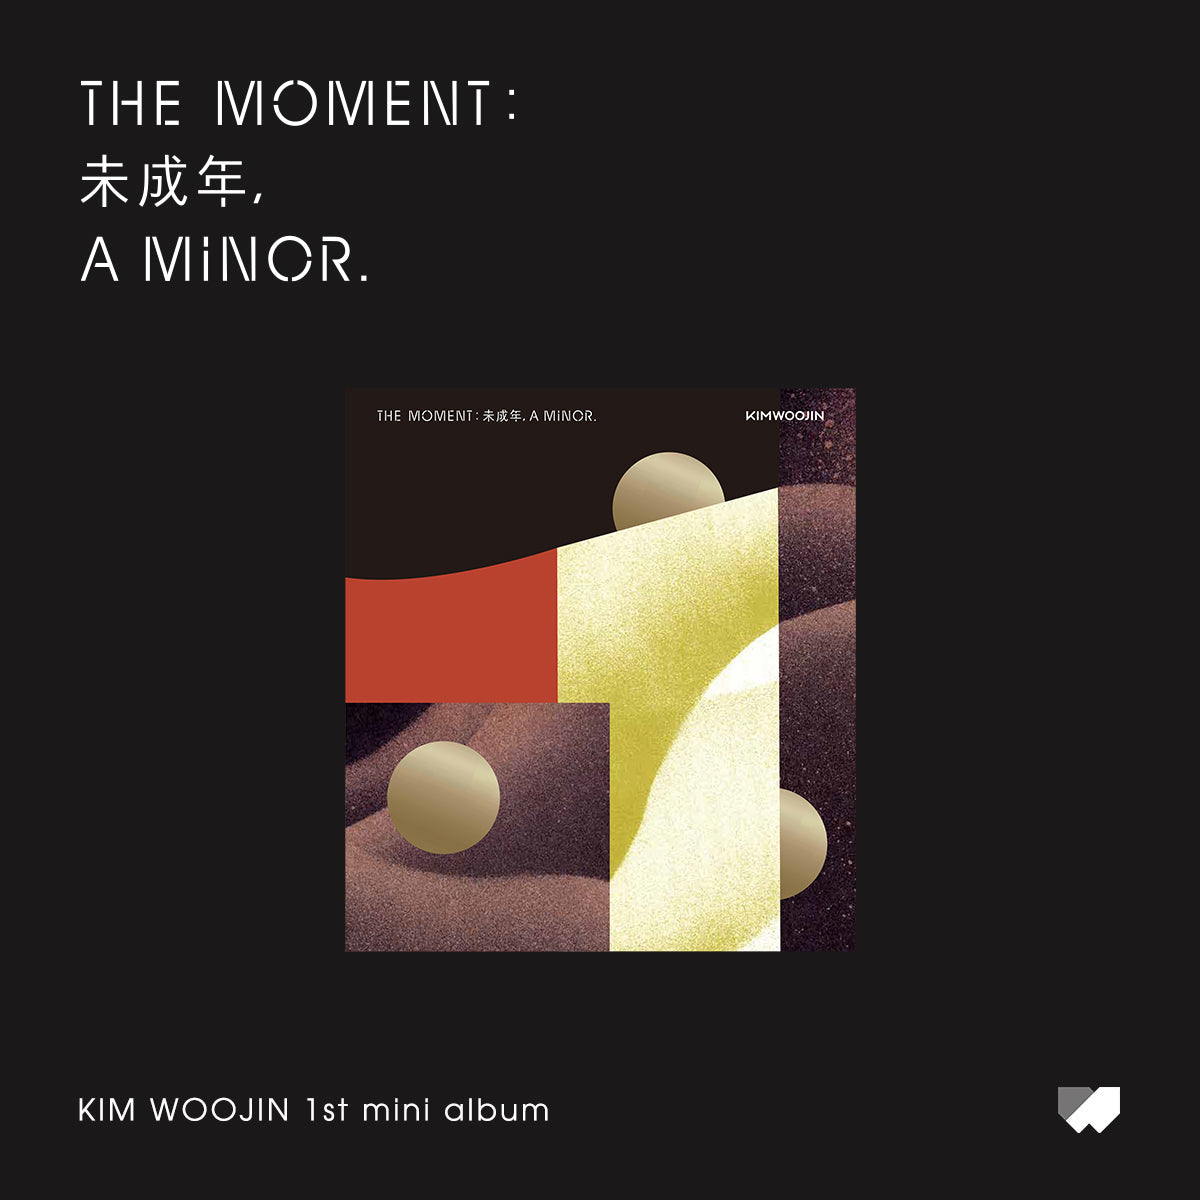 KIM WOO JIN 1ST MINI ALBUM 'THE MOMENT : 未成年, A MINOR' - KPOP REPUBLIC